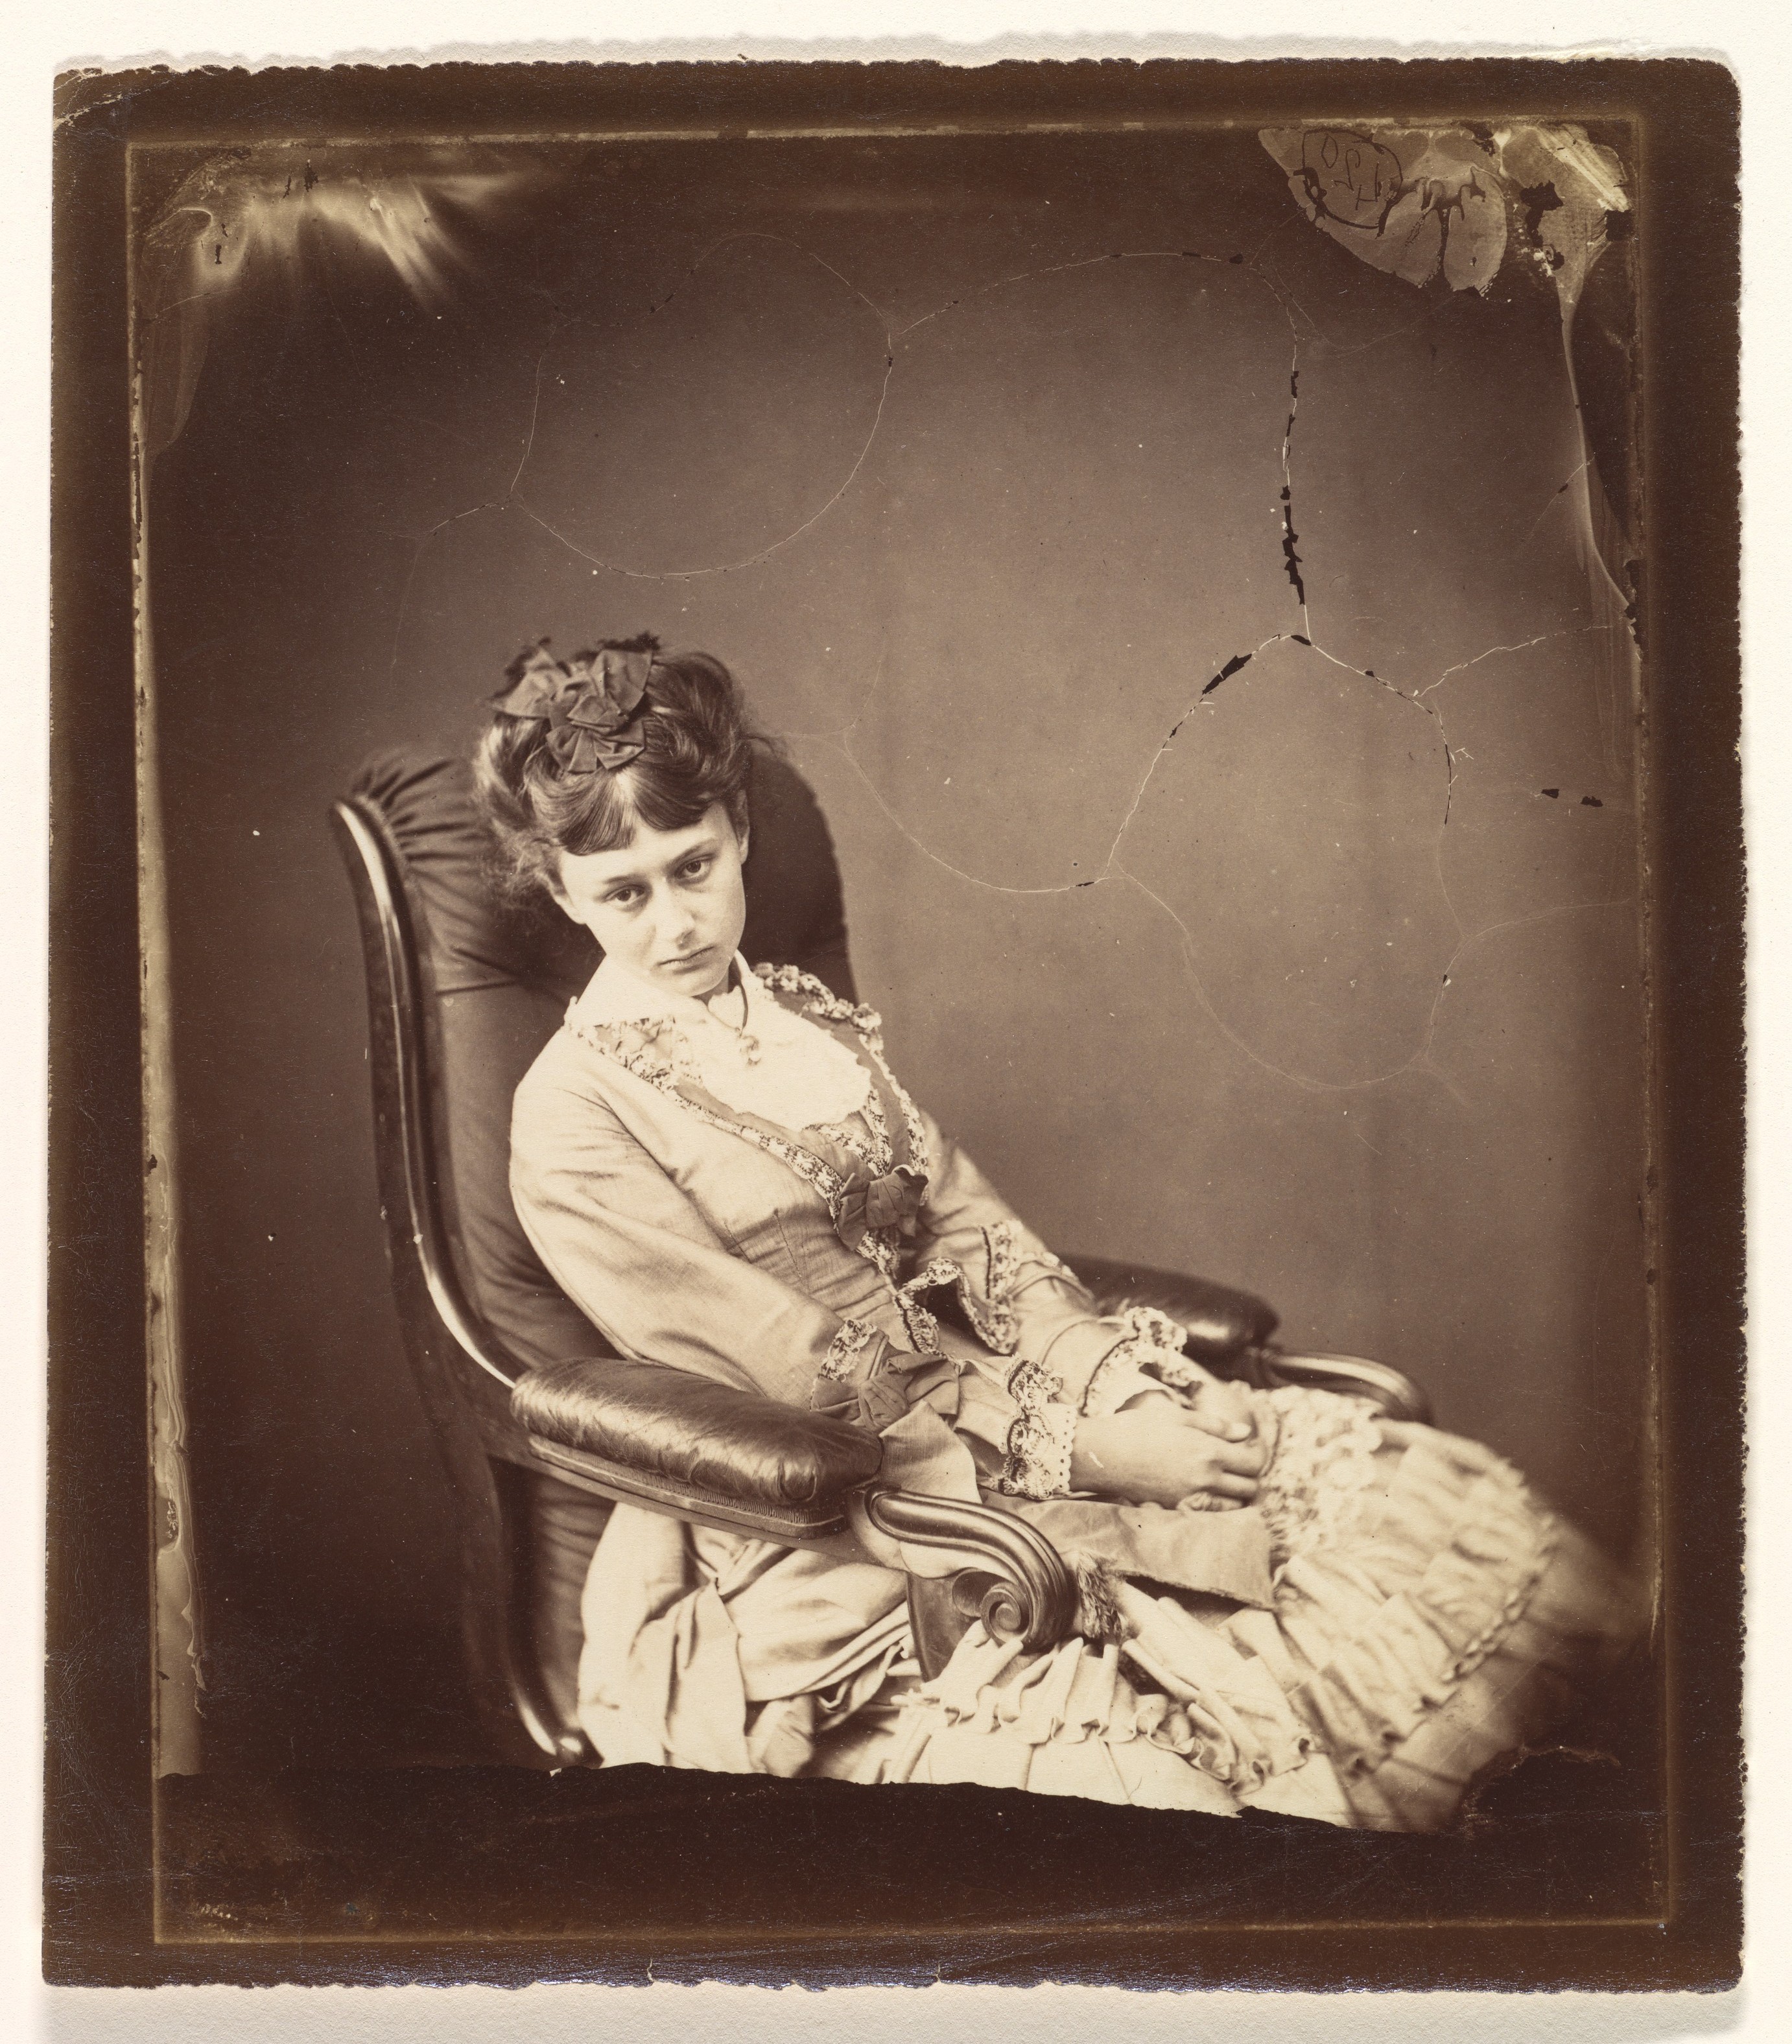 Алиса Плезенс Лидделл, 1870. Автор Льюис Кэрролл